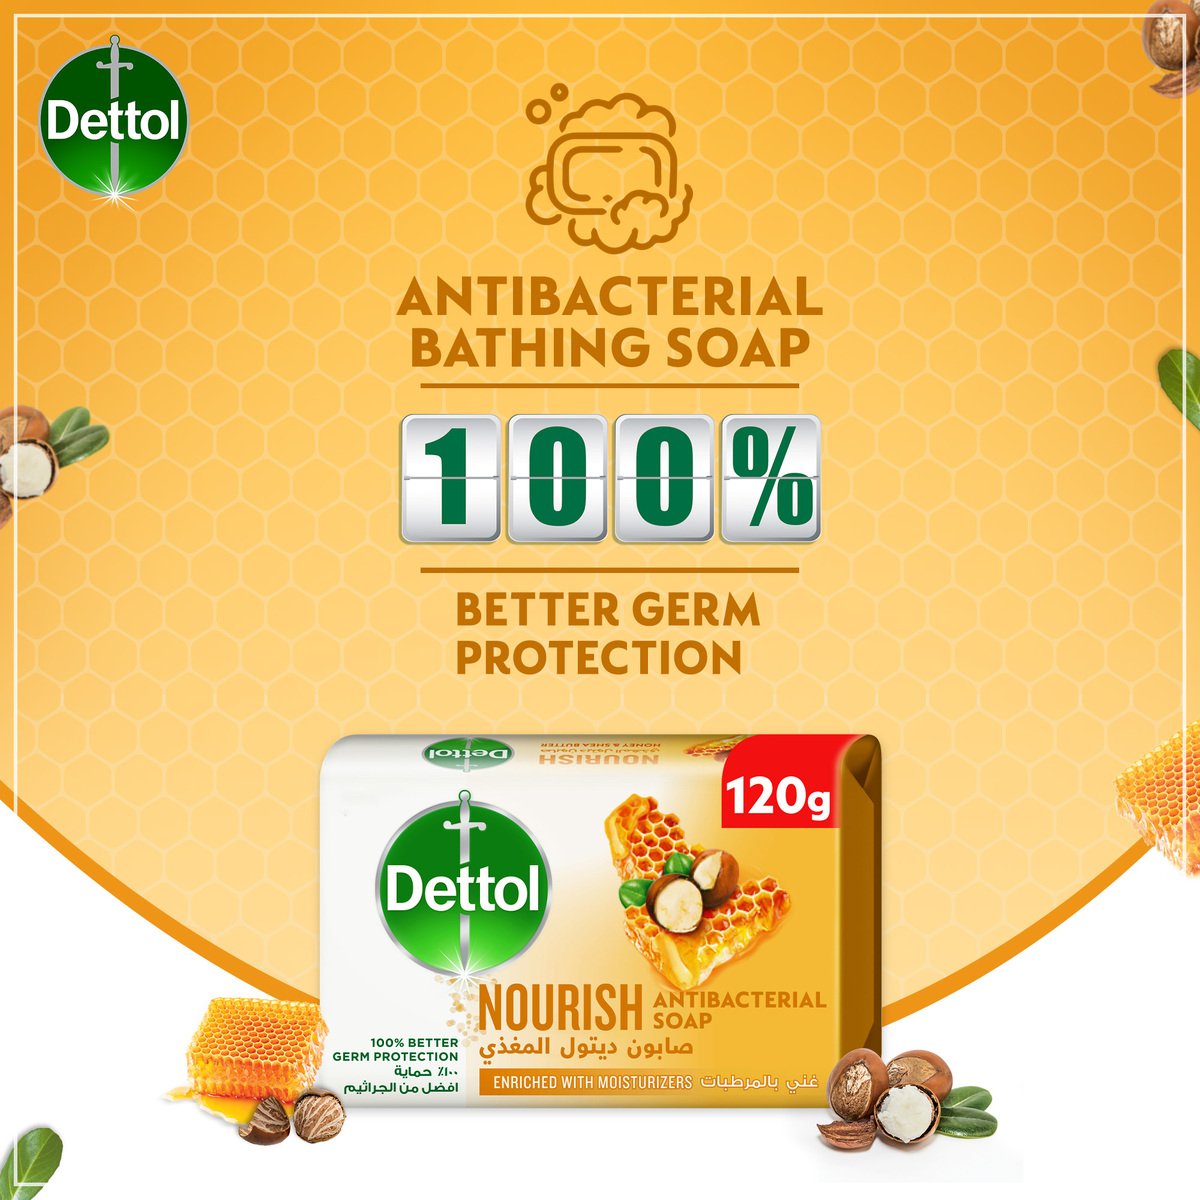 Dettol Nourish Anti-Bacterial Bathing Soap Bar Honey & Shea Butter Fragrance 120 g